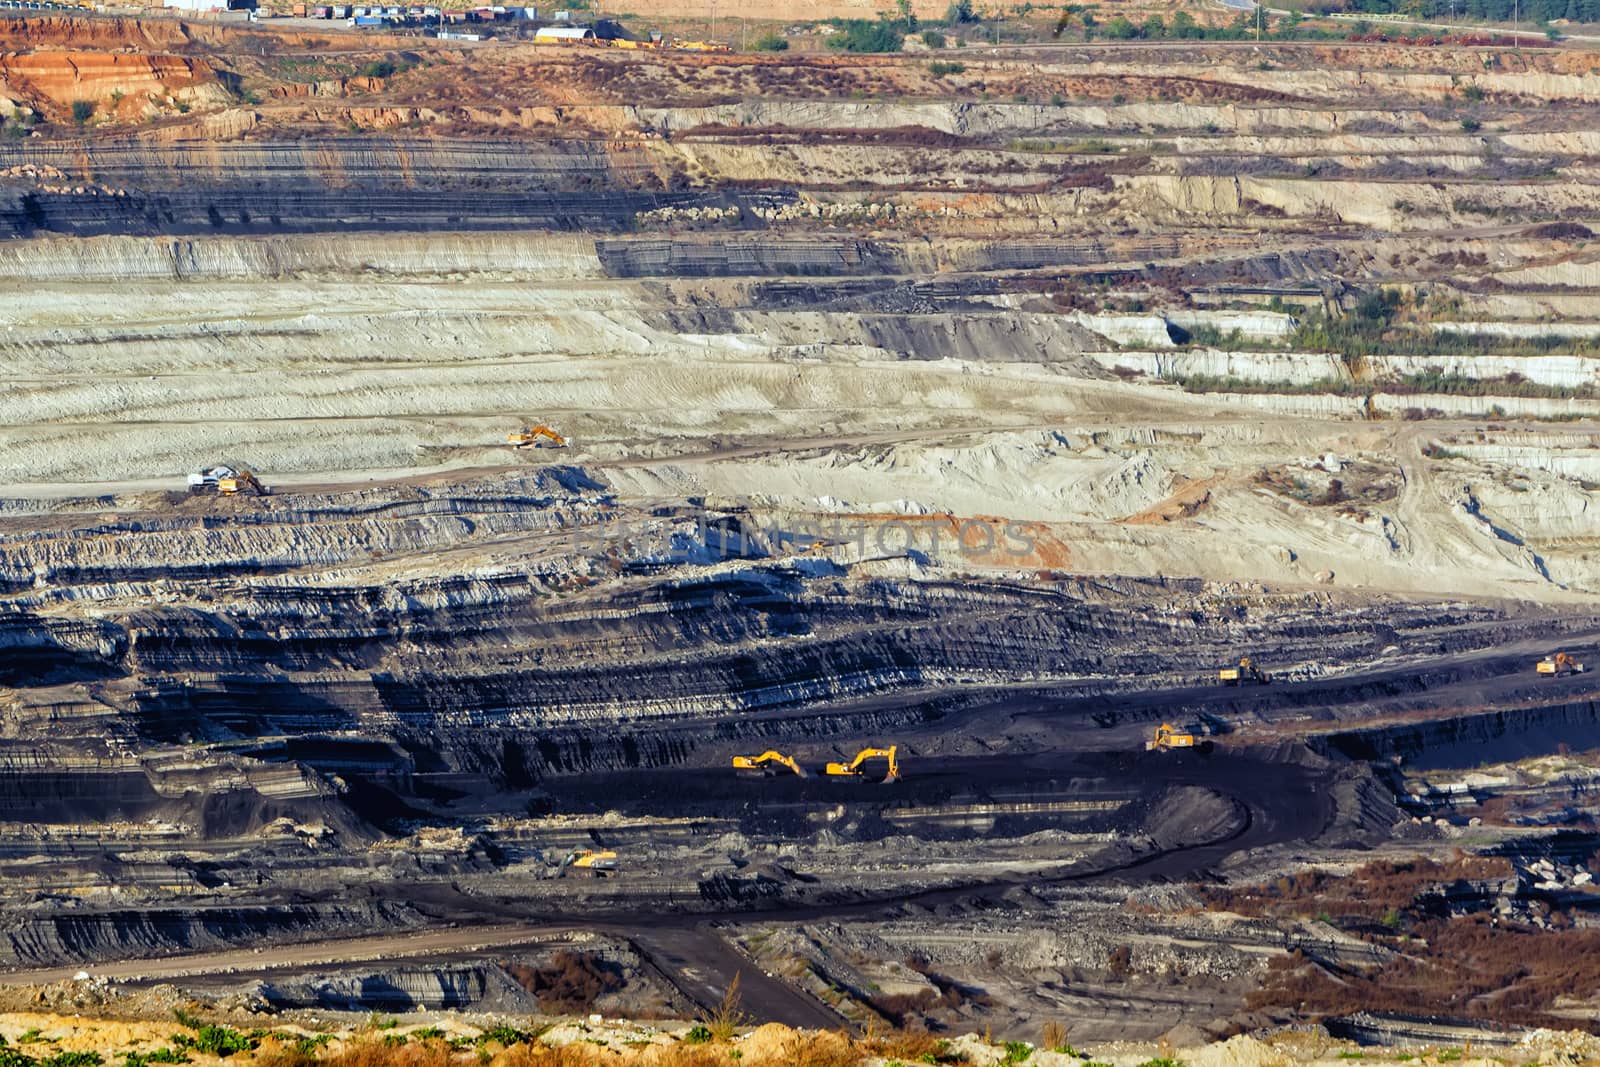 Very Large excavators at work in lignite (brown coal) mine in Ko by ververidis